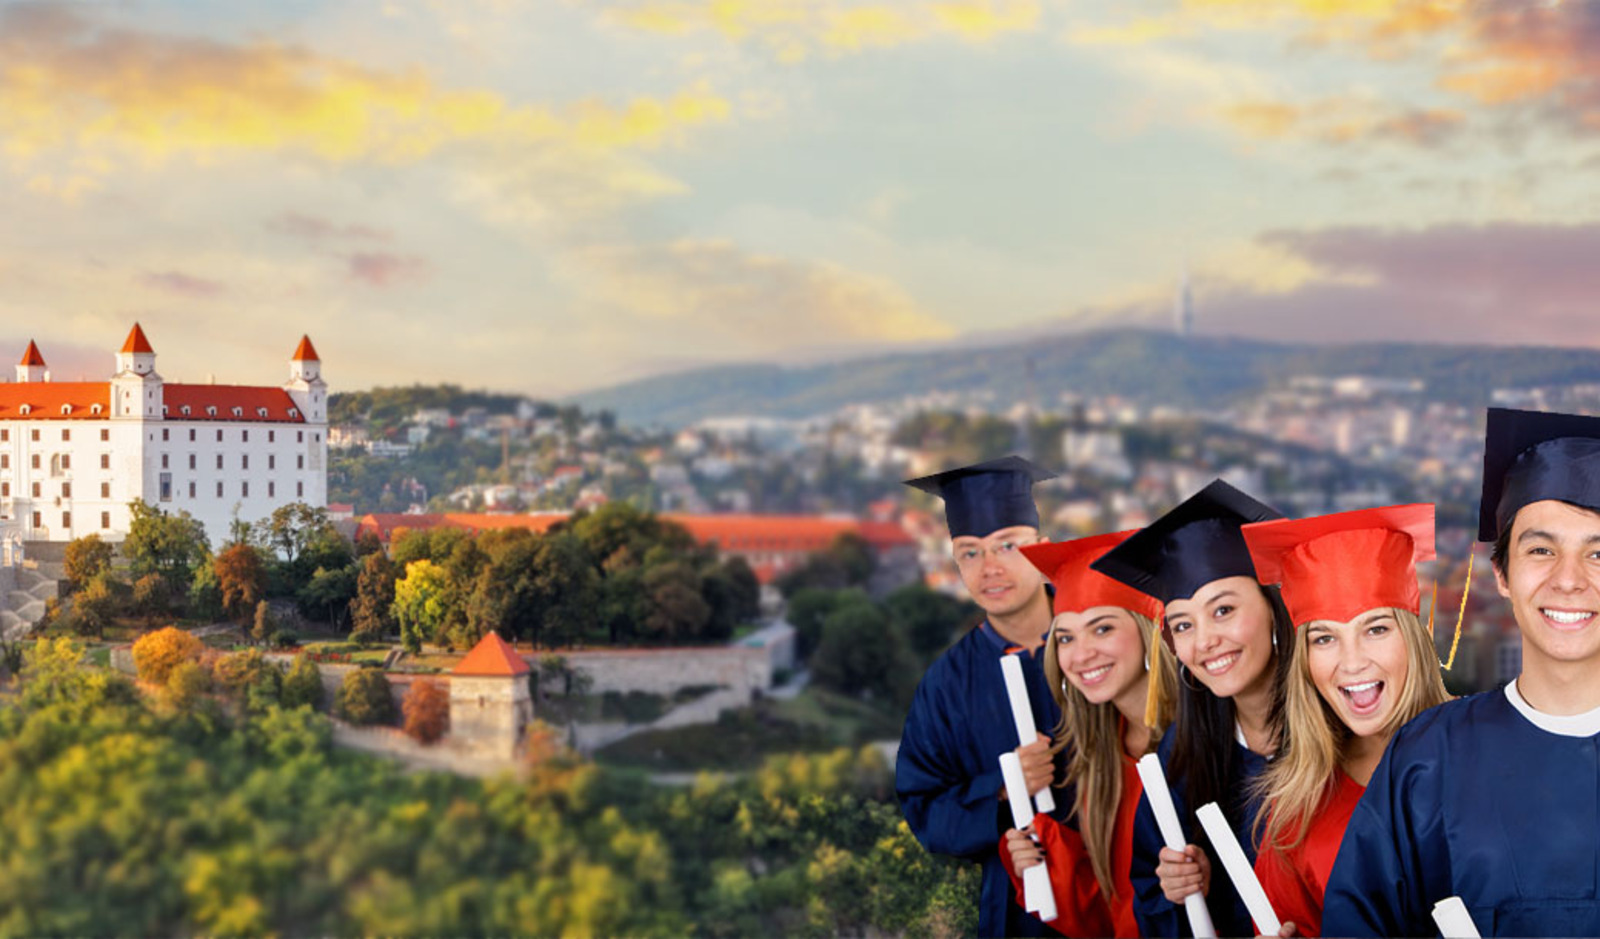 Бесплатное образование в чехии — требования и перспективы выпускников